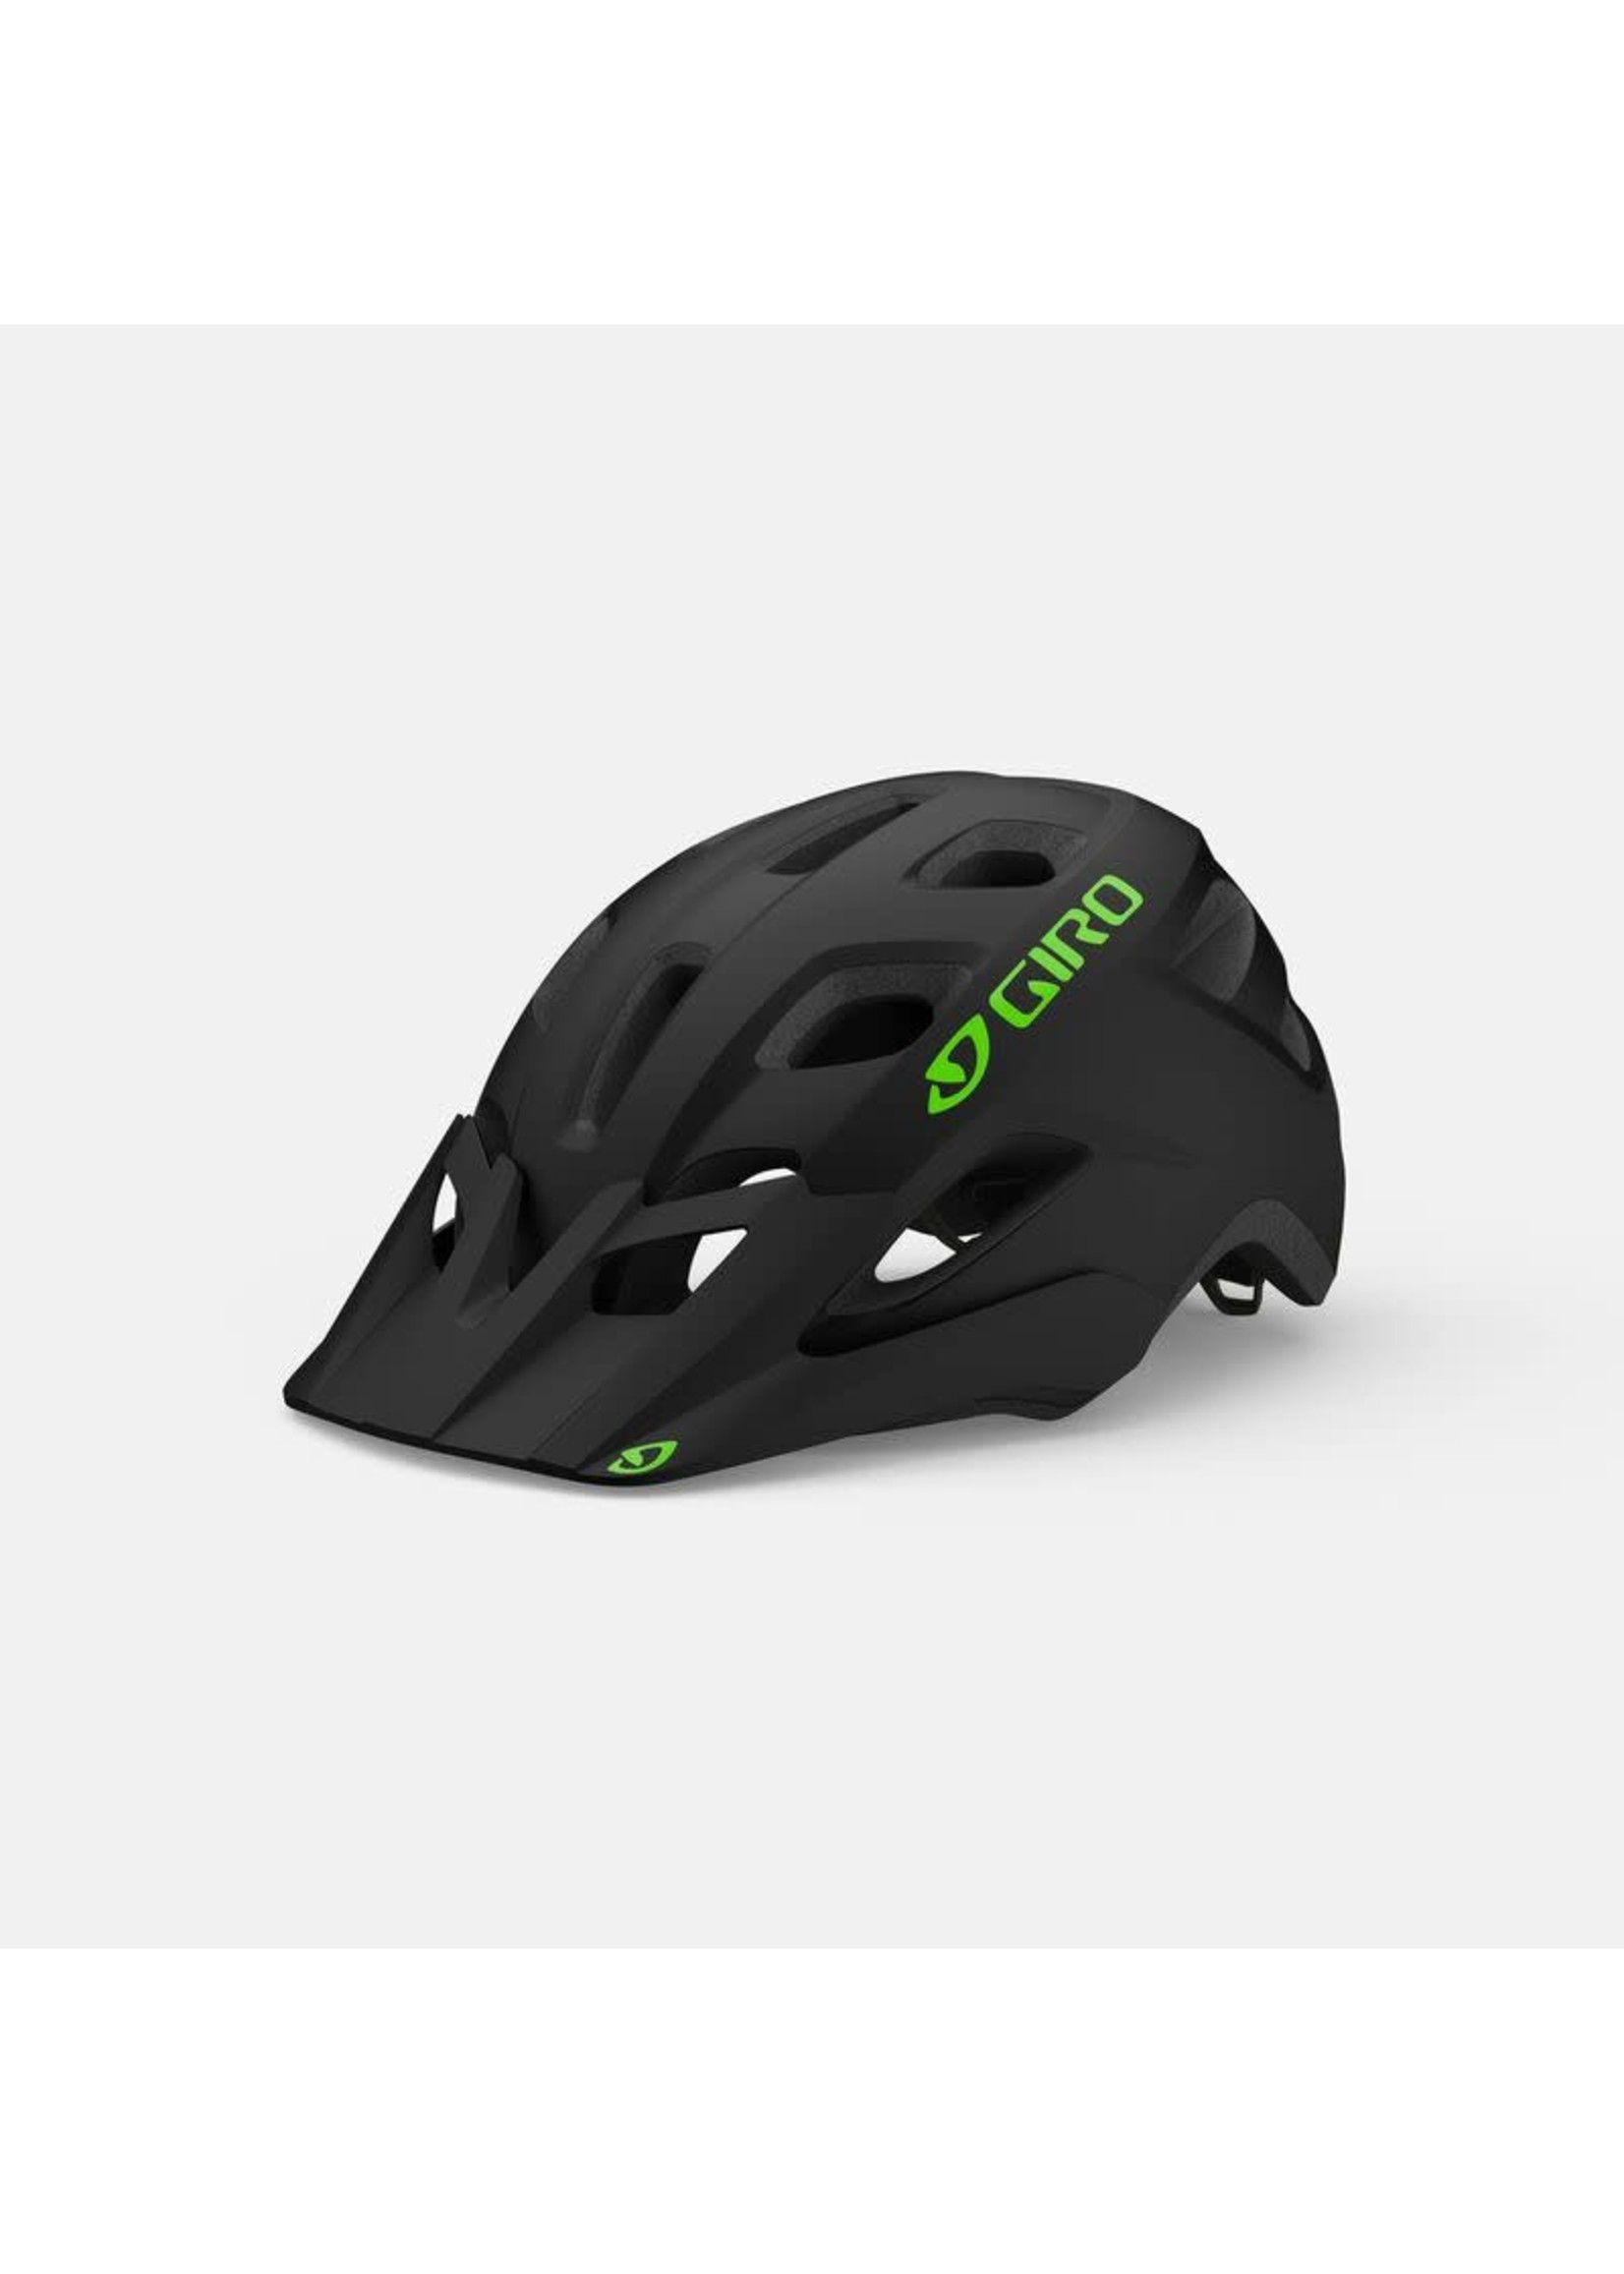 Giro Helmet - Giro Tremor MIPS - Youth/Women's Universal (50-57cm)